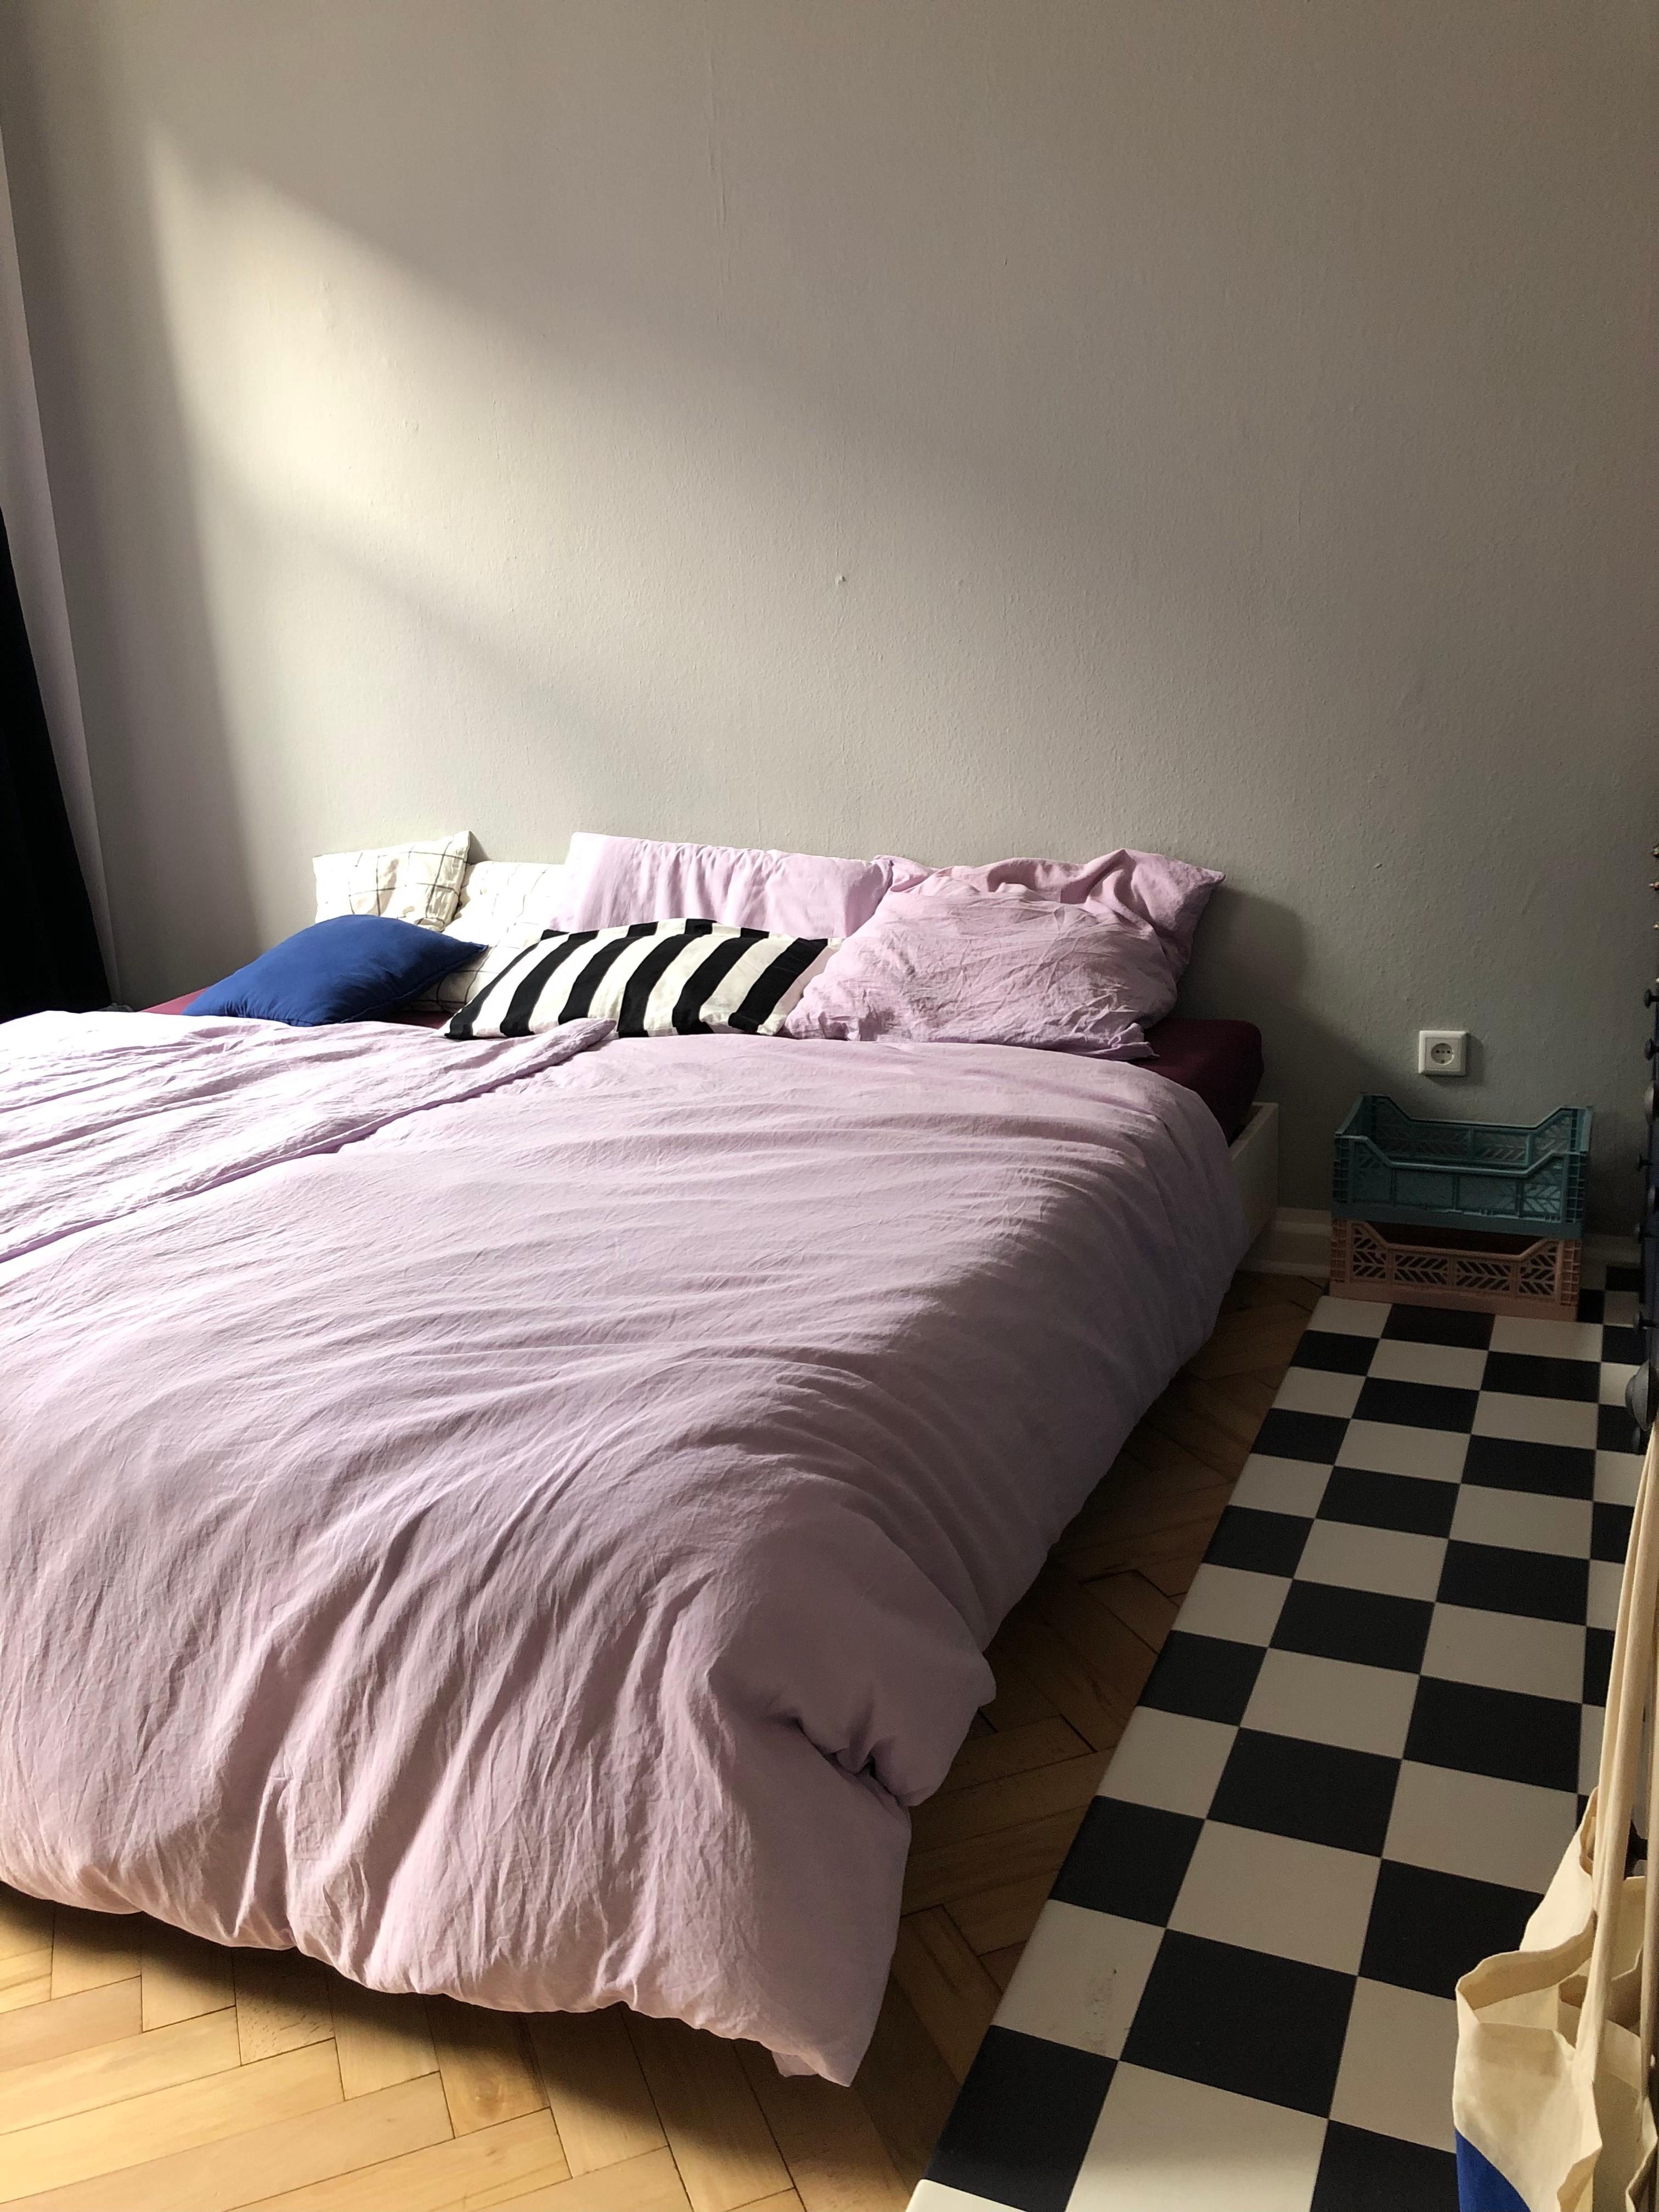 Schlafzimmersituation 💜 #schlafzimmer #altbau #couchliebt